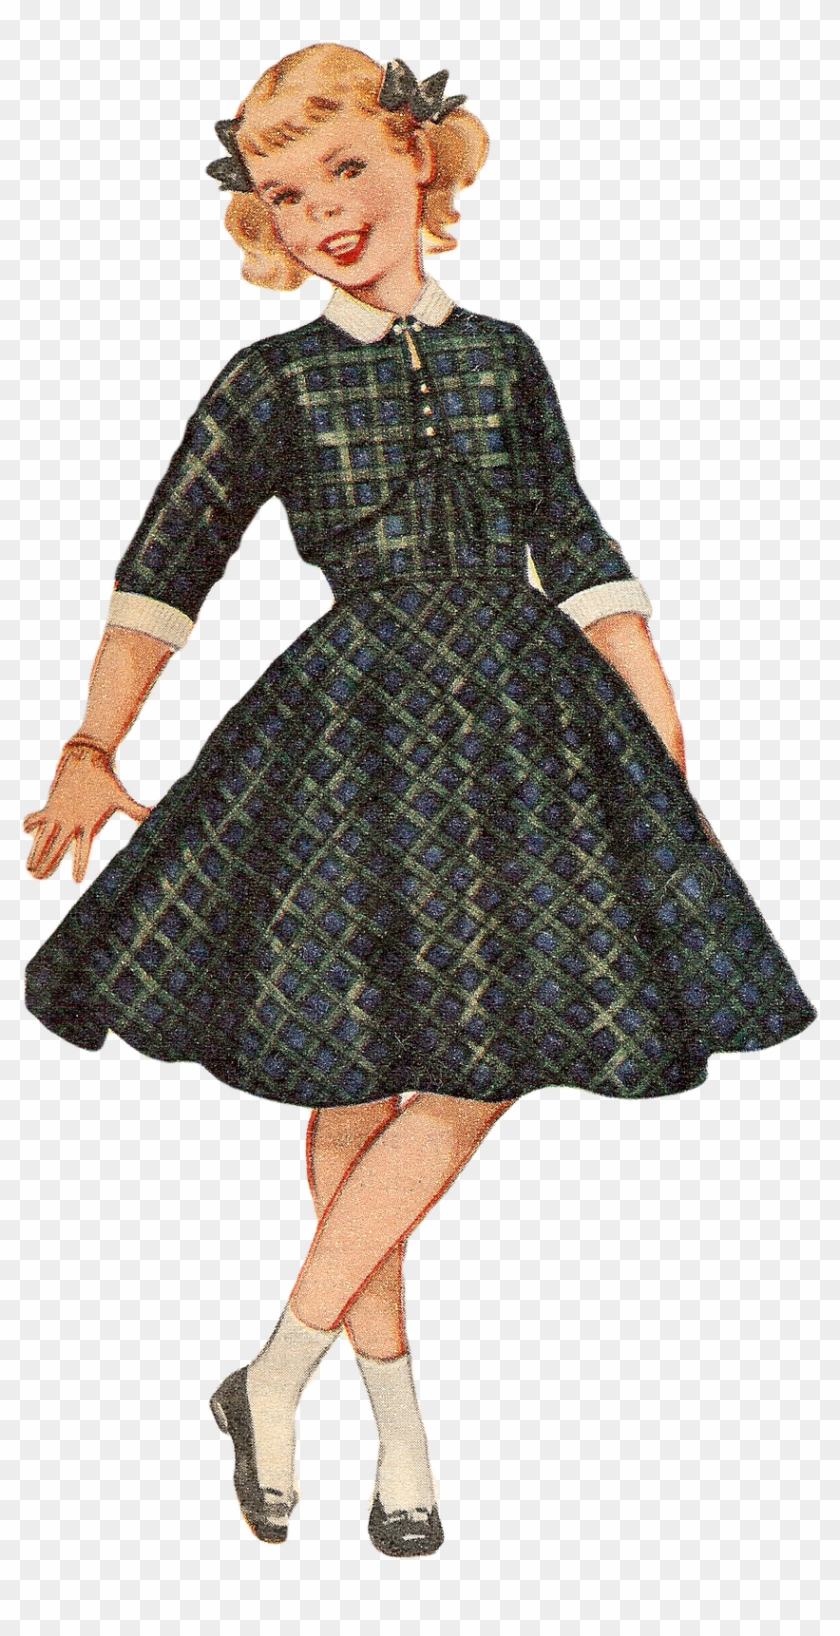 Free Vintage Image 1955 Girl 842×1,600 Pixels Vintage - Vintage Girl Png Clipart